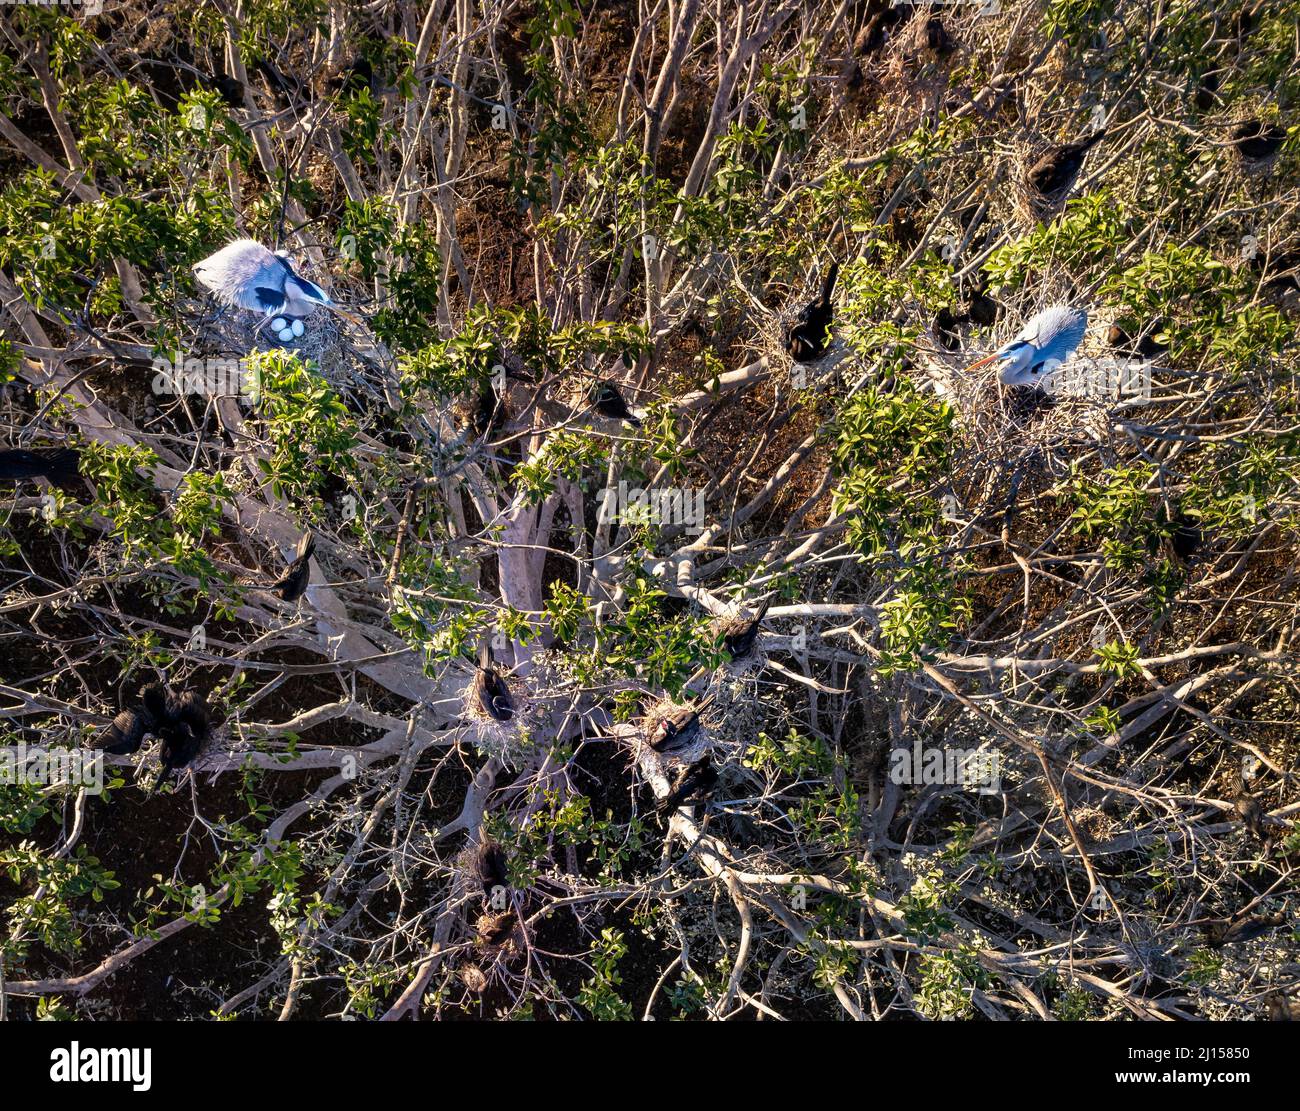 Las garzas azules y cormoranes anidan en un árbol en La Primavera cerca de Culiacán, Sinaloa, México. Foto de stock